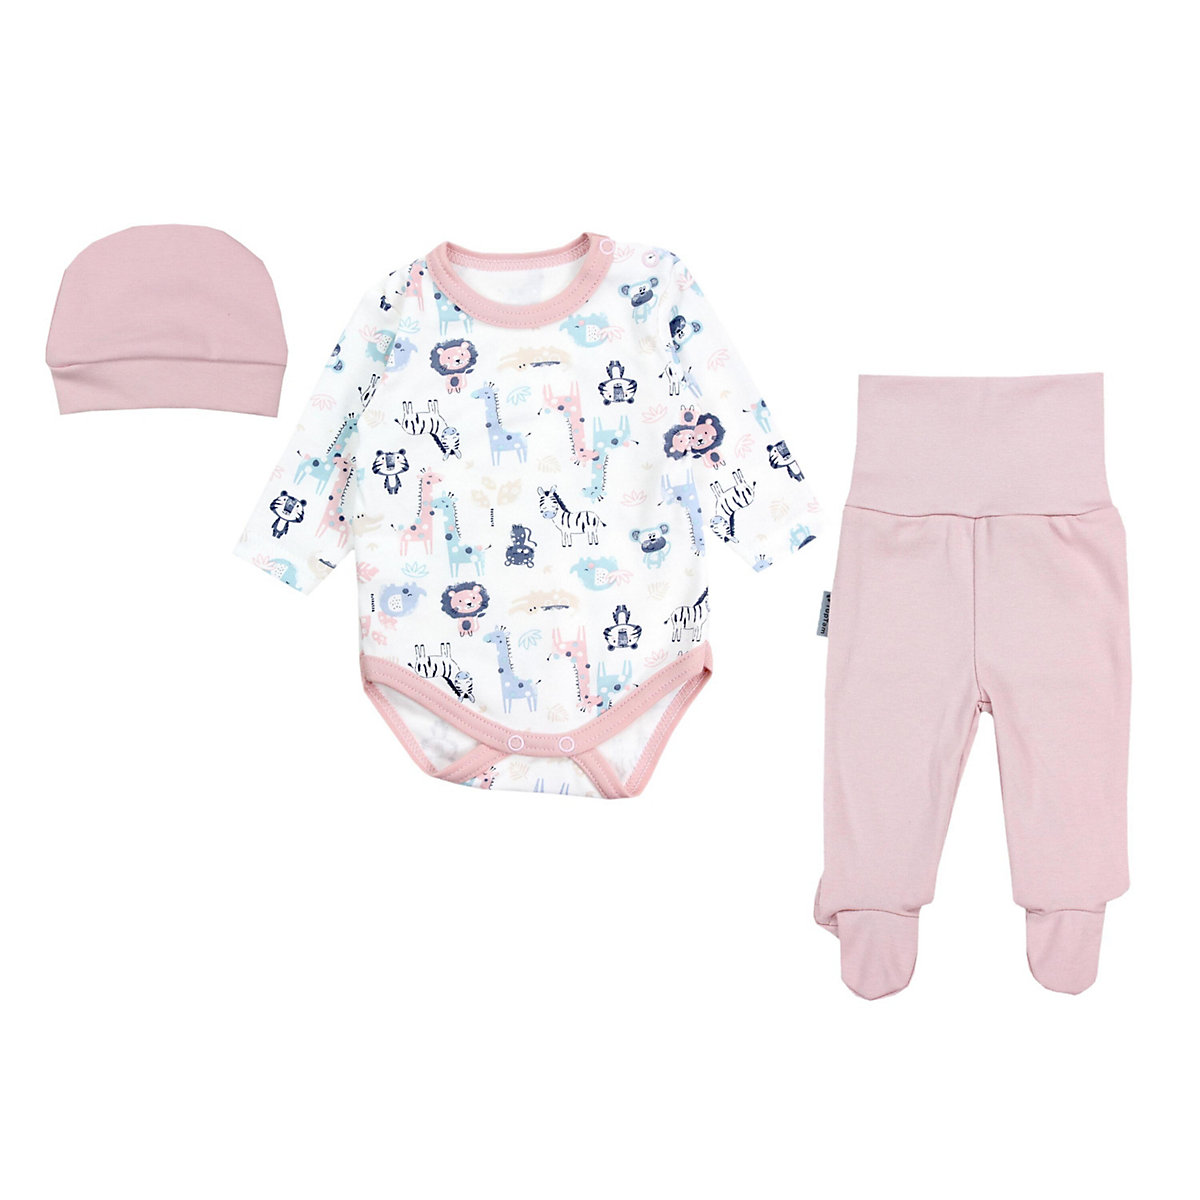 TupTam Baby Bekleidungsset Langarmbody Hose Mütze3 teilig für Kinder rosa/blau